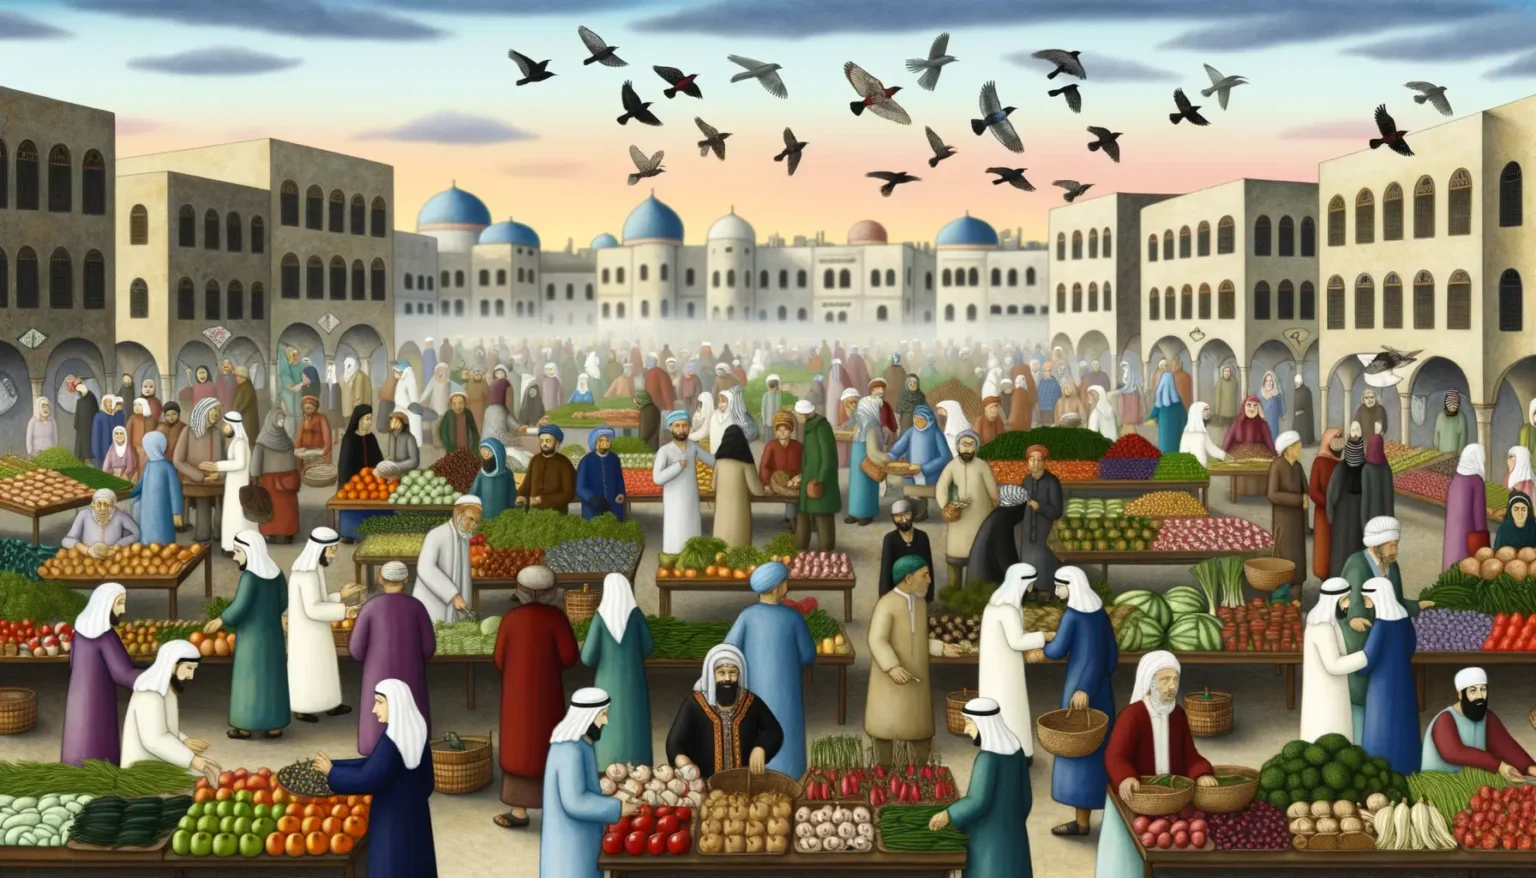 Illustrierte Szene eines belebten traditionellen Marktes im mittelalterlichen Nahen Osten mit Menschen in historischer Kleidung, die Waren feilschen und kaufen. Händler bieten frisches Obst und Gemüse an bunten Ständen an. Im Hintergrund sind historische Gebäude mit Bögen und Kuppeln zu sehen. Über dem Geschehen schweben Vögel am klaren Himmel.